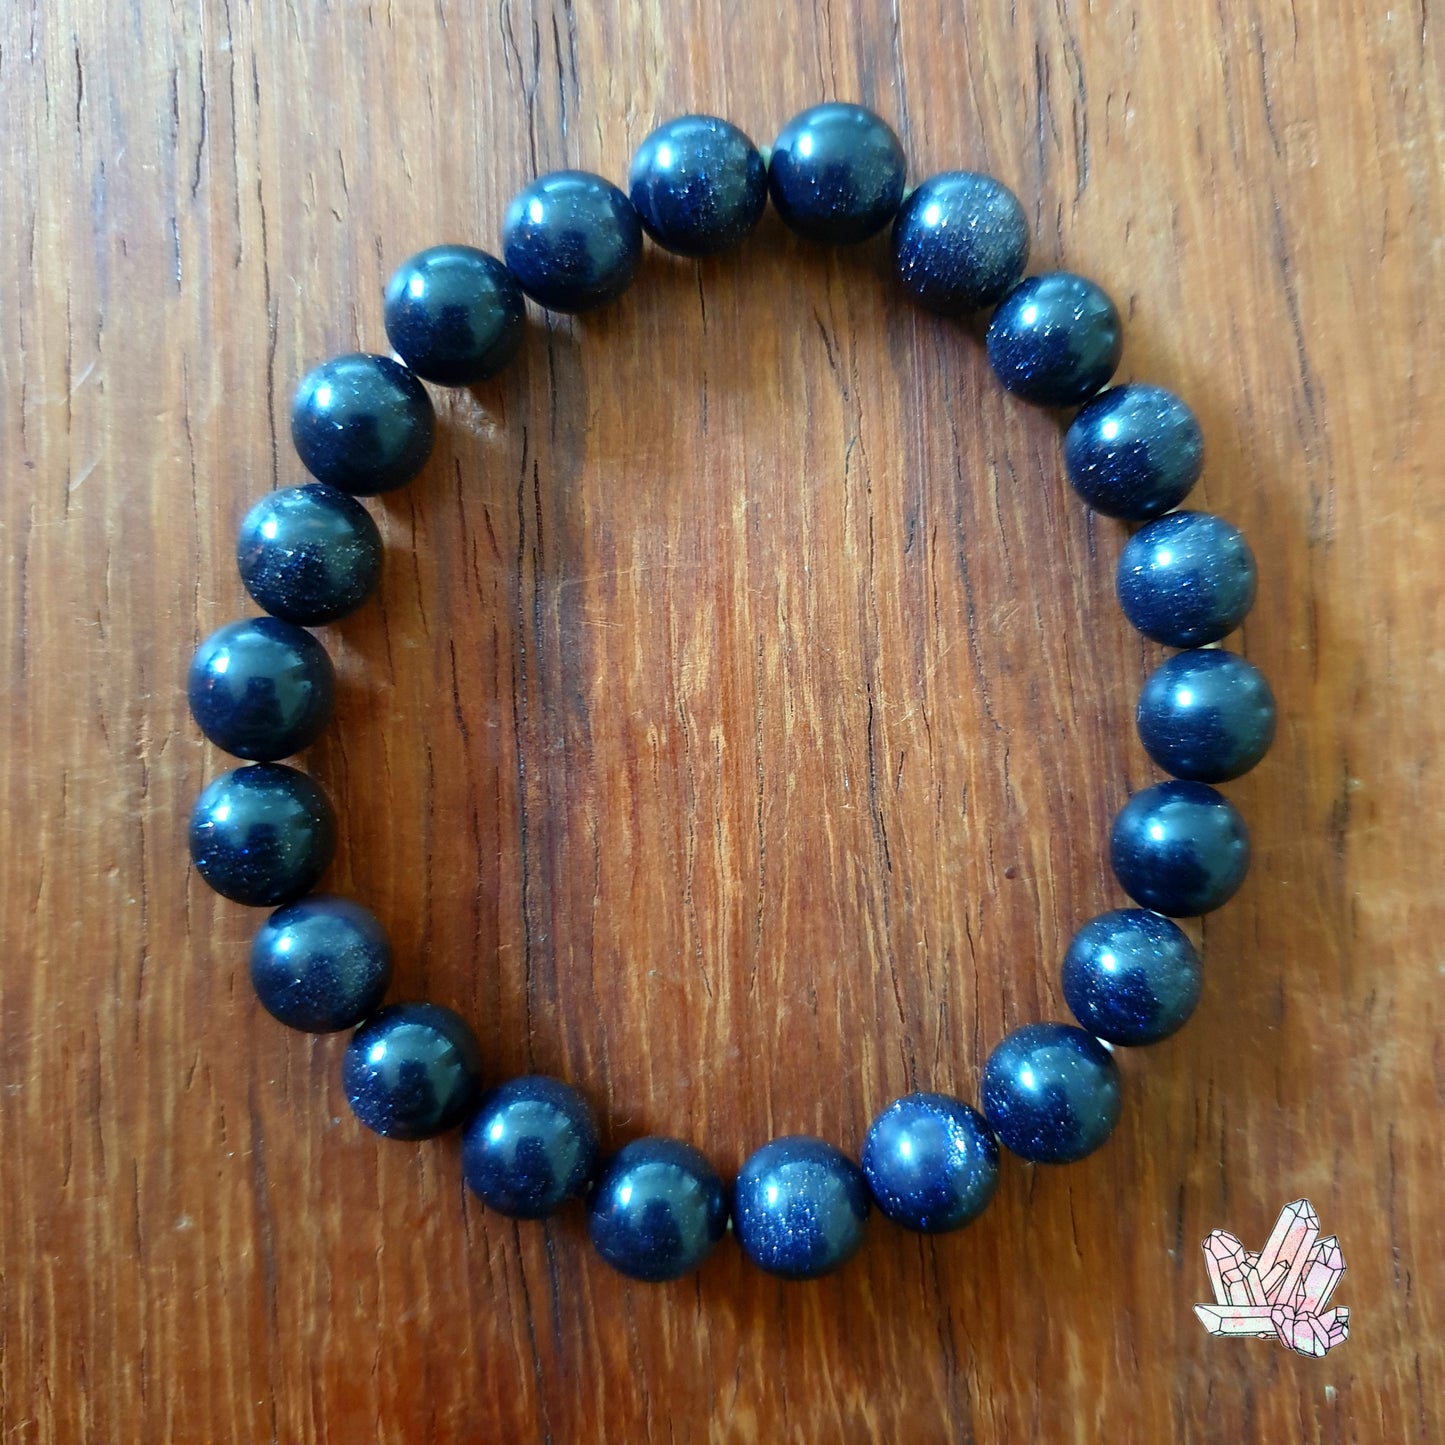 Blue Goldstone Bracelet